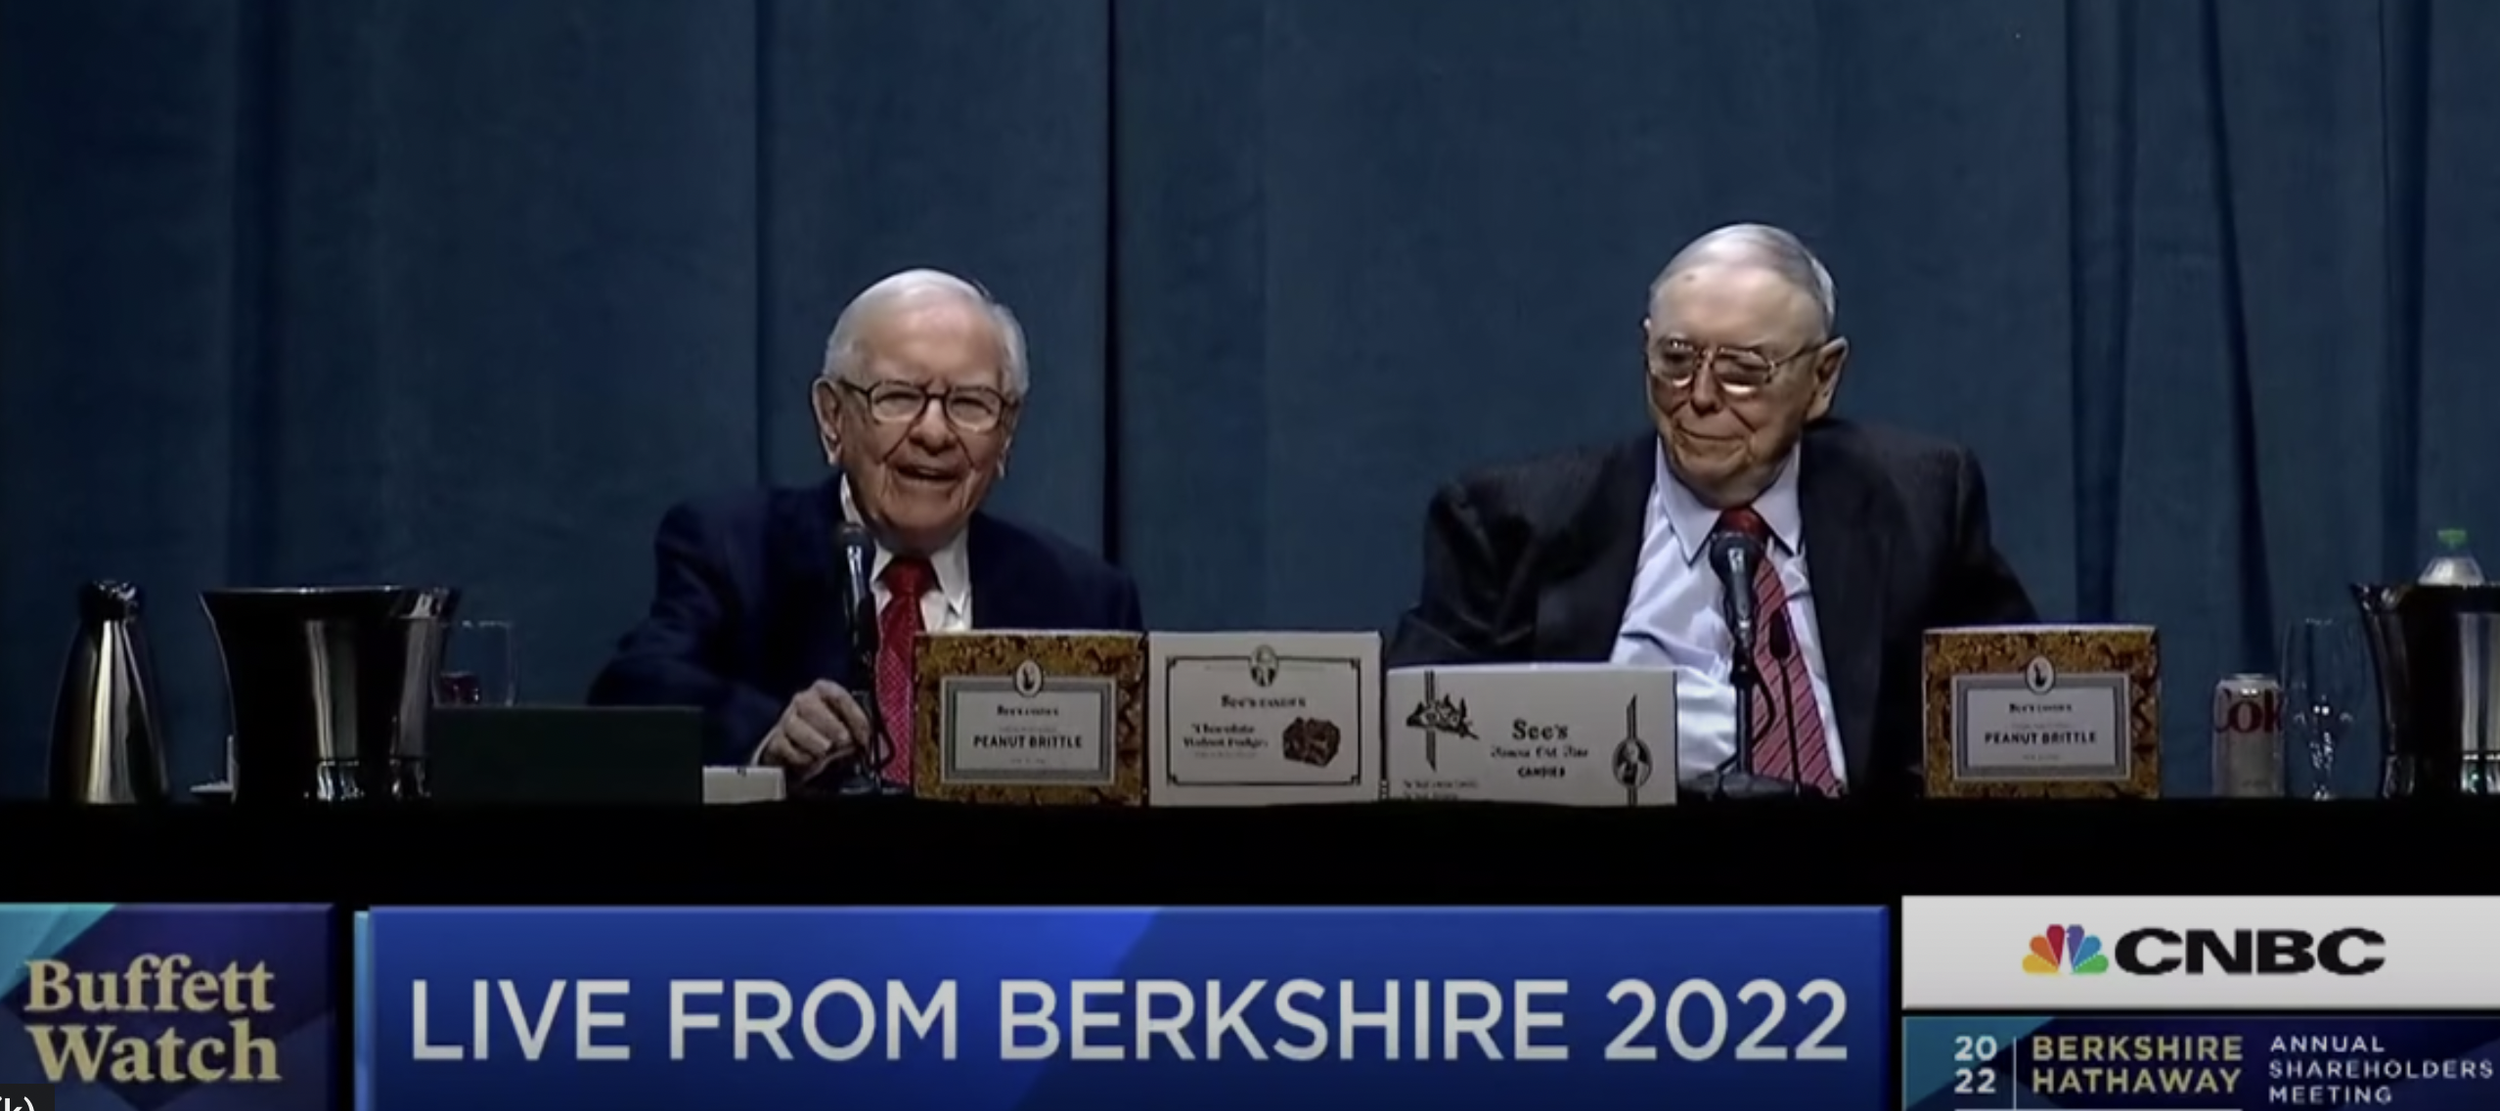 Warren Buffett and Charlie Munger of Berkshire Hathaway